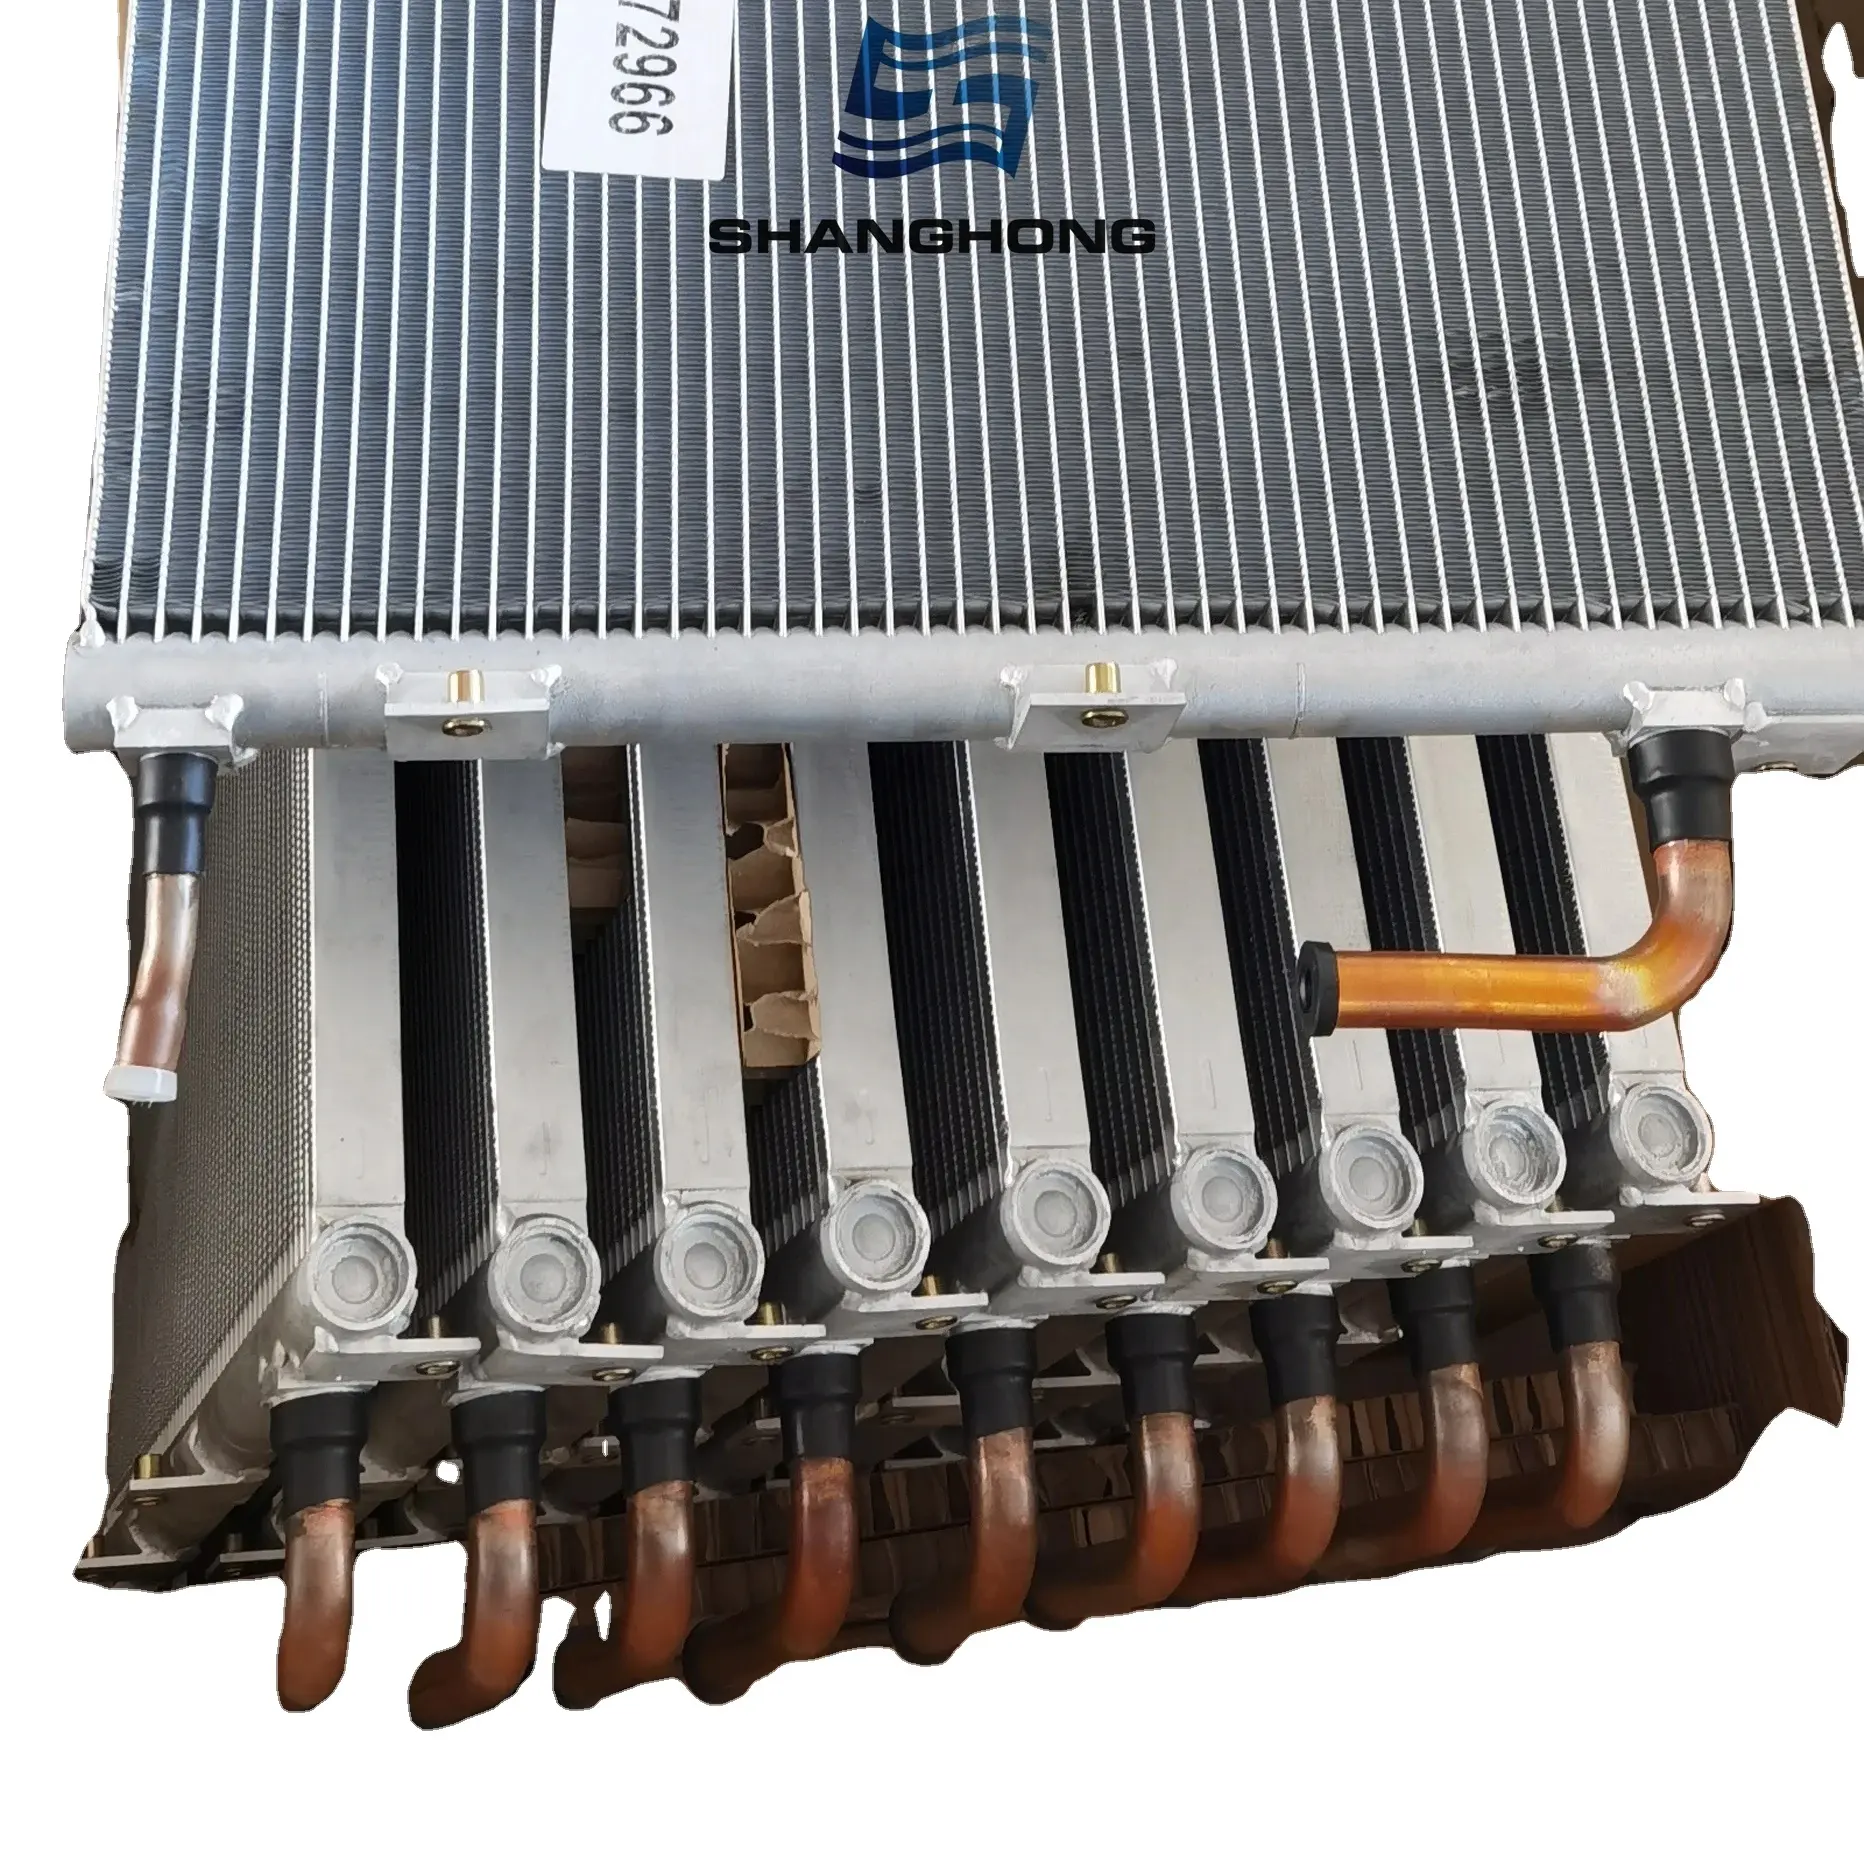 SH otomatik yedek kondenser bobin buzdolabı parçaları termo kral için 67-2966 67-2436 kondenser bobin radyatörler kiti